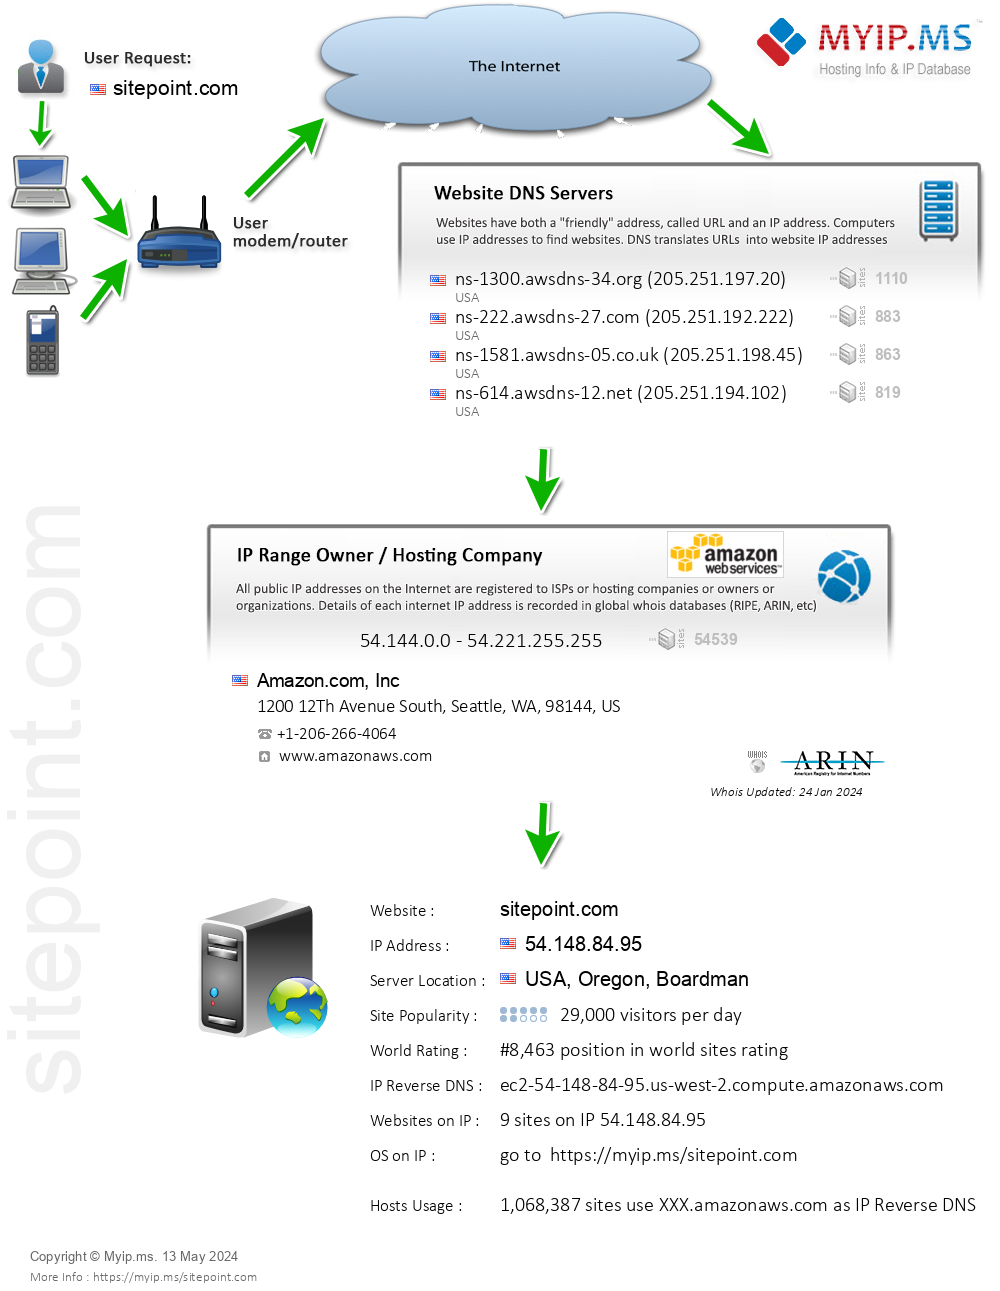 Sitepoint.com - Website Hosting Visual IP Diagram